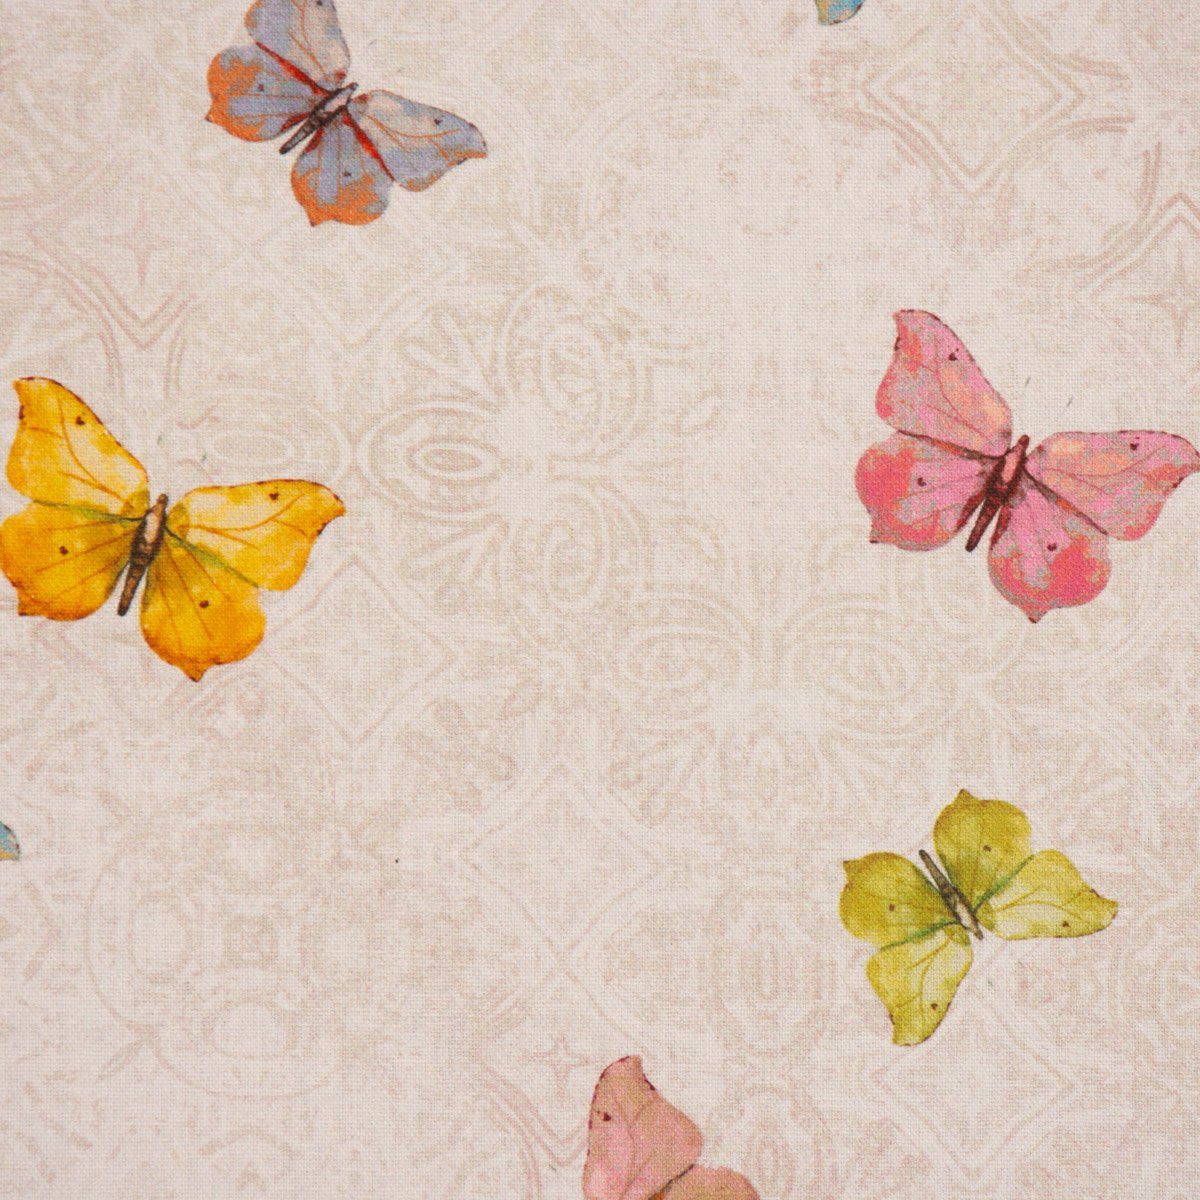 SCHÖNER LEBEN. SCHÖNER LEBEN. Schmetterlinge handmade Tischläufer natur Ornament Tischläufer rosa bunt